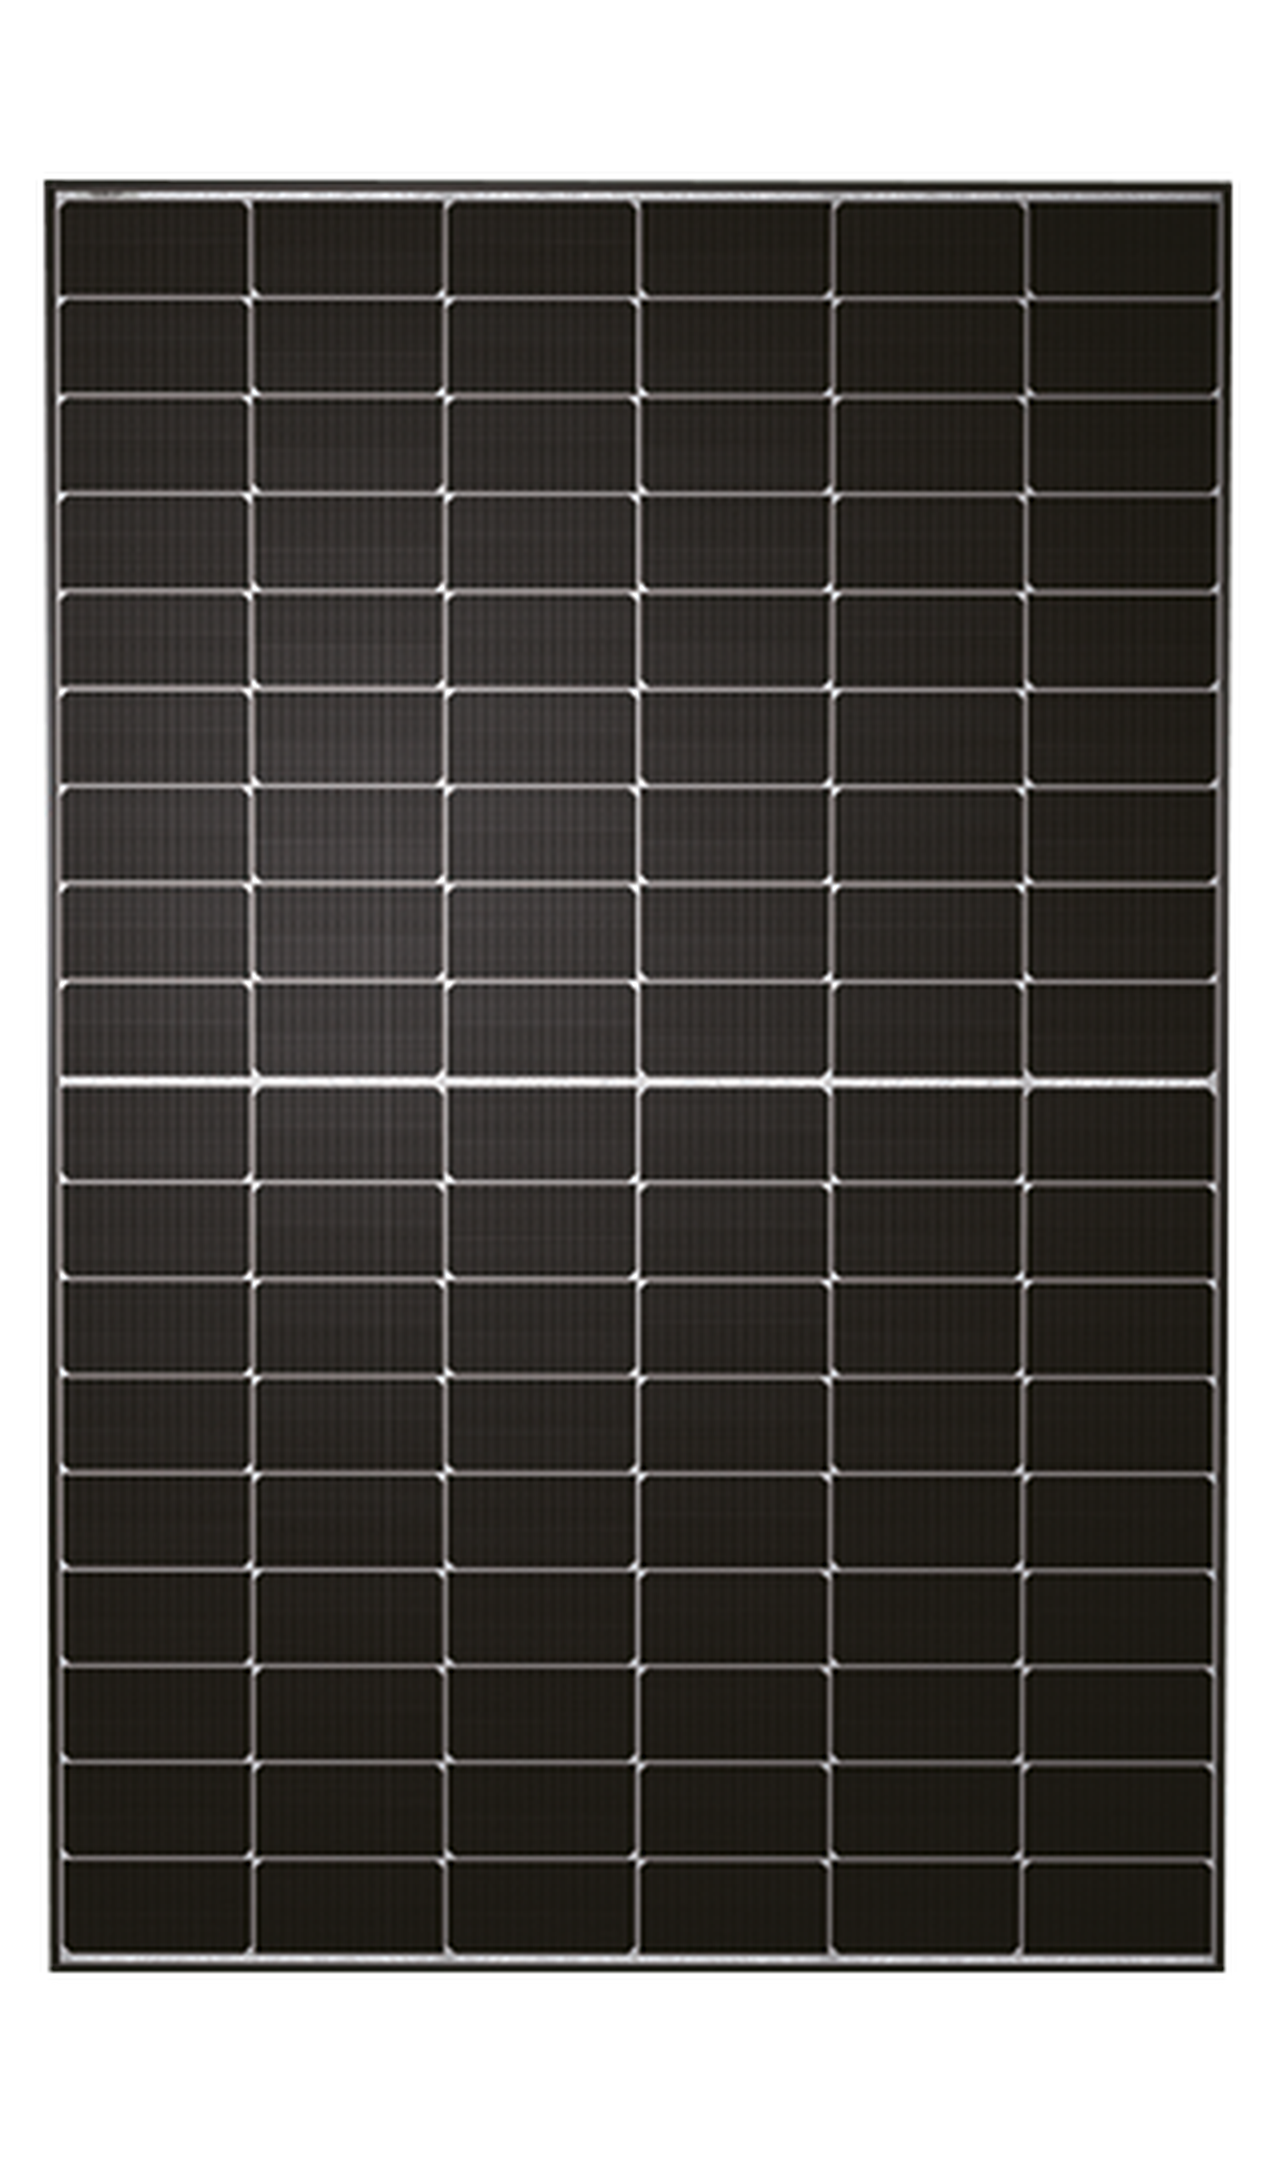 TWMND-54HS430 — EVO2. Rahmen schwarz, Front weiß